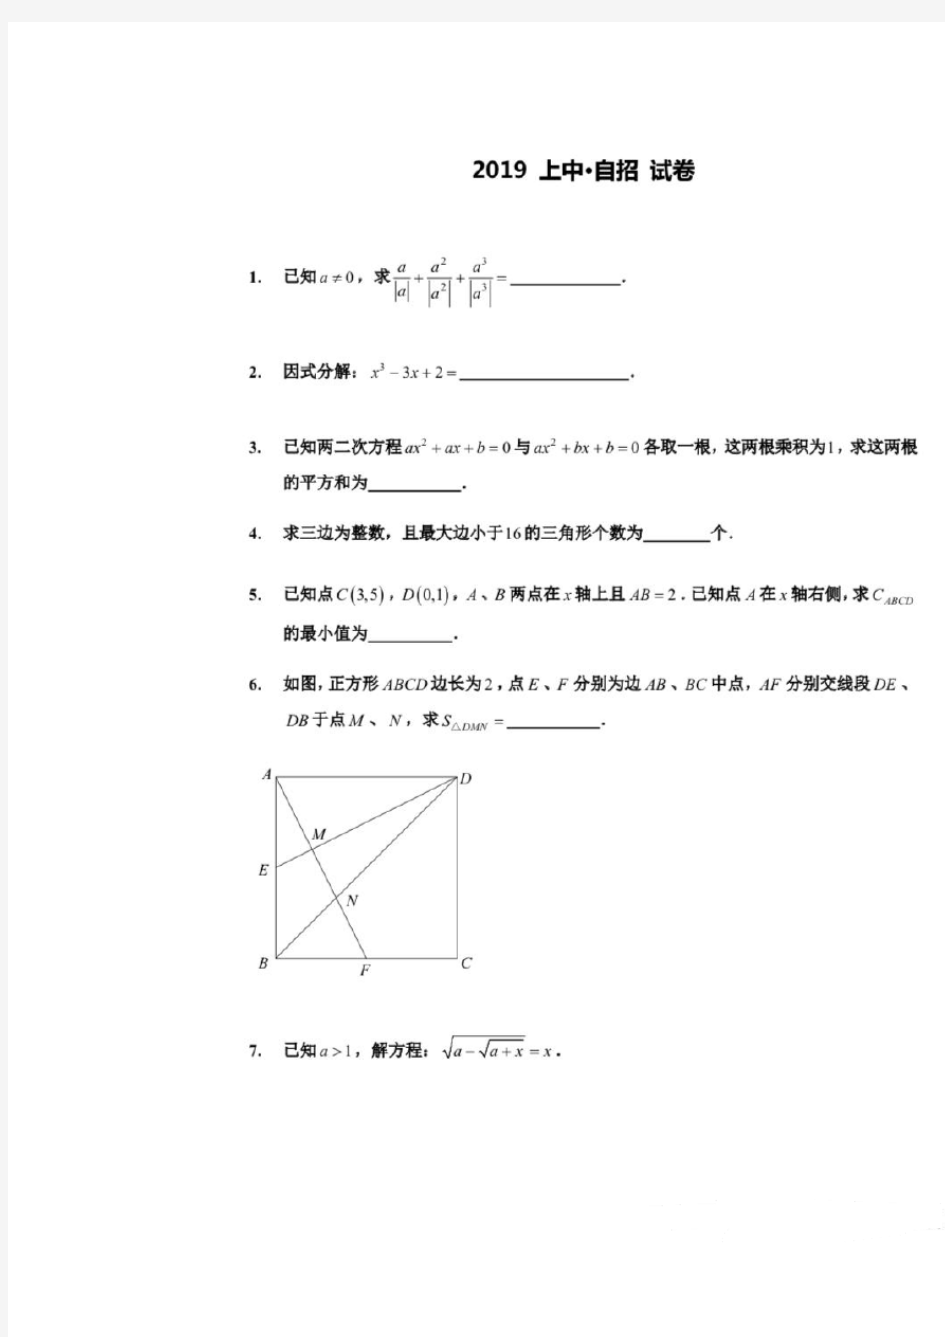 上海中学2019年自招数学试题及答案(pdf版)